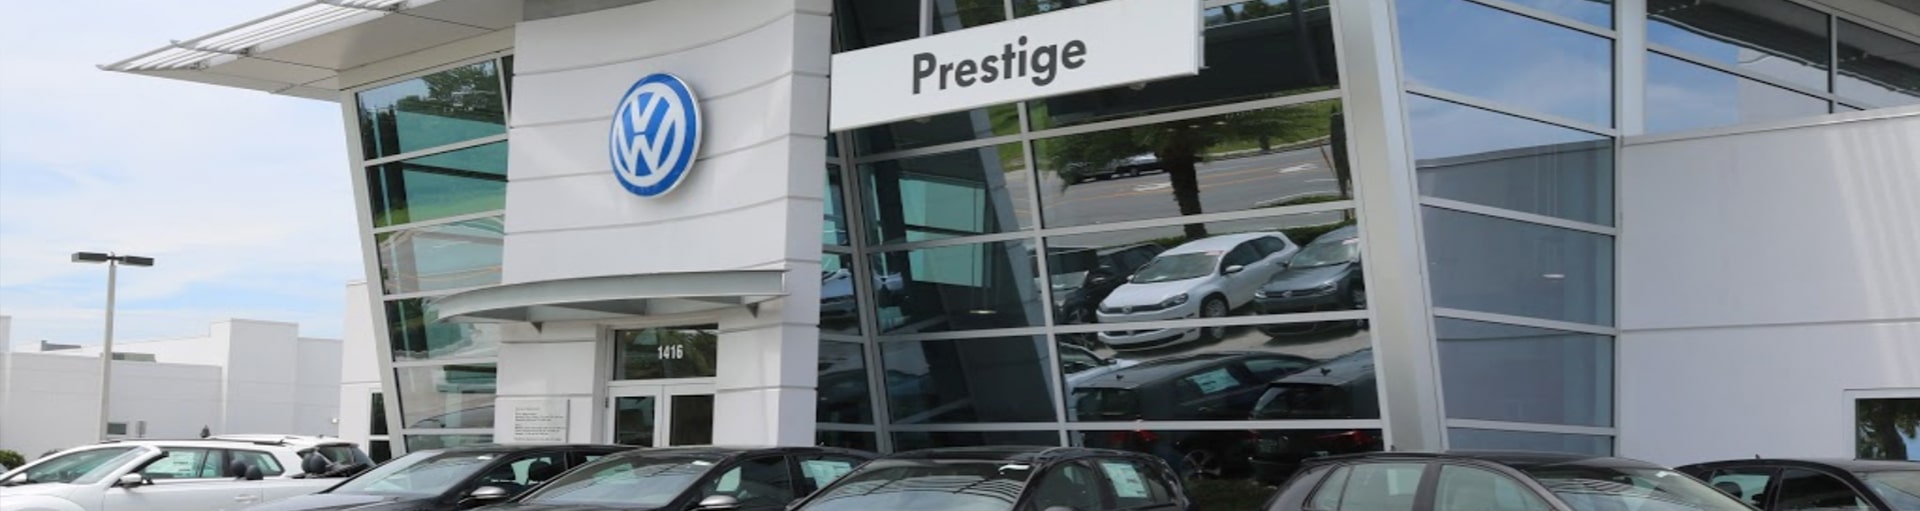 Prestige Volkswagen of Melbourne VW Service Near Cocoa, FL